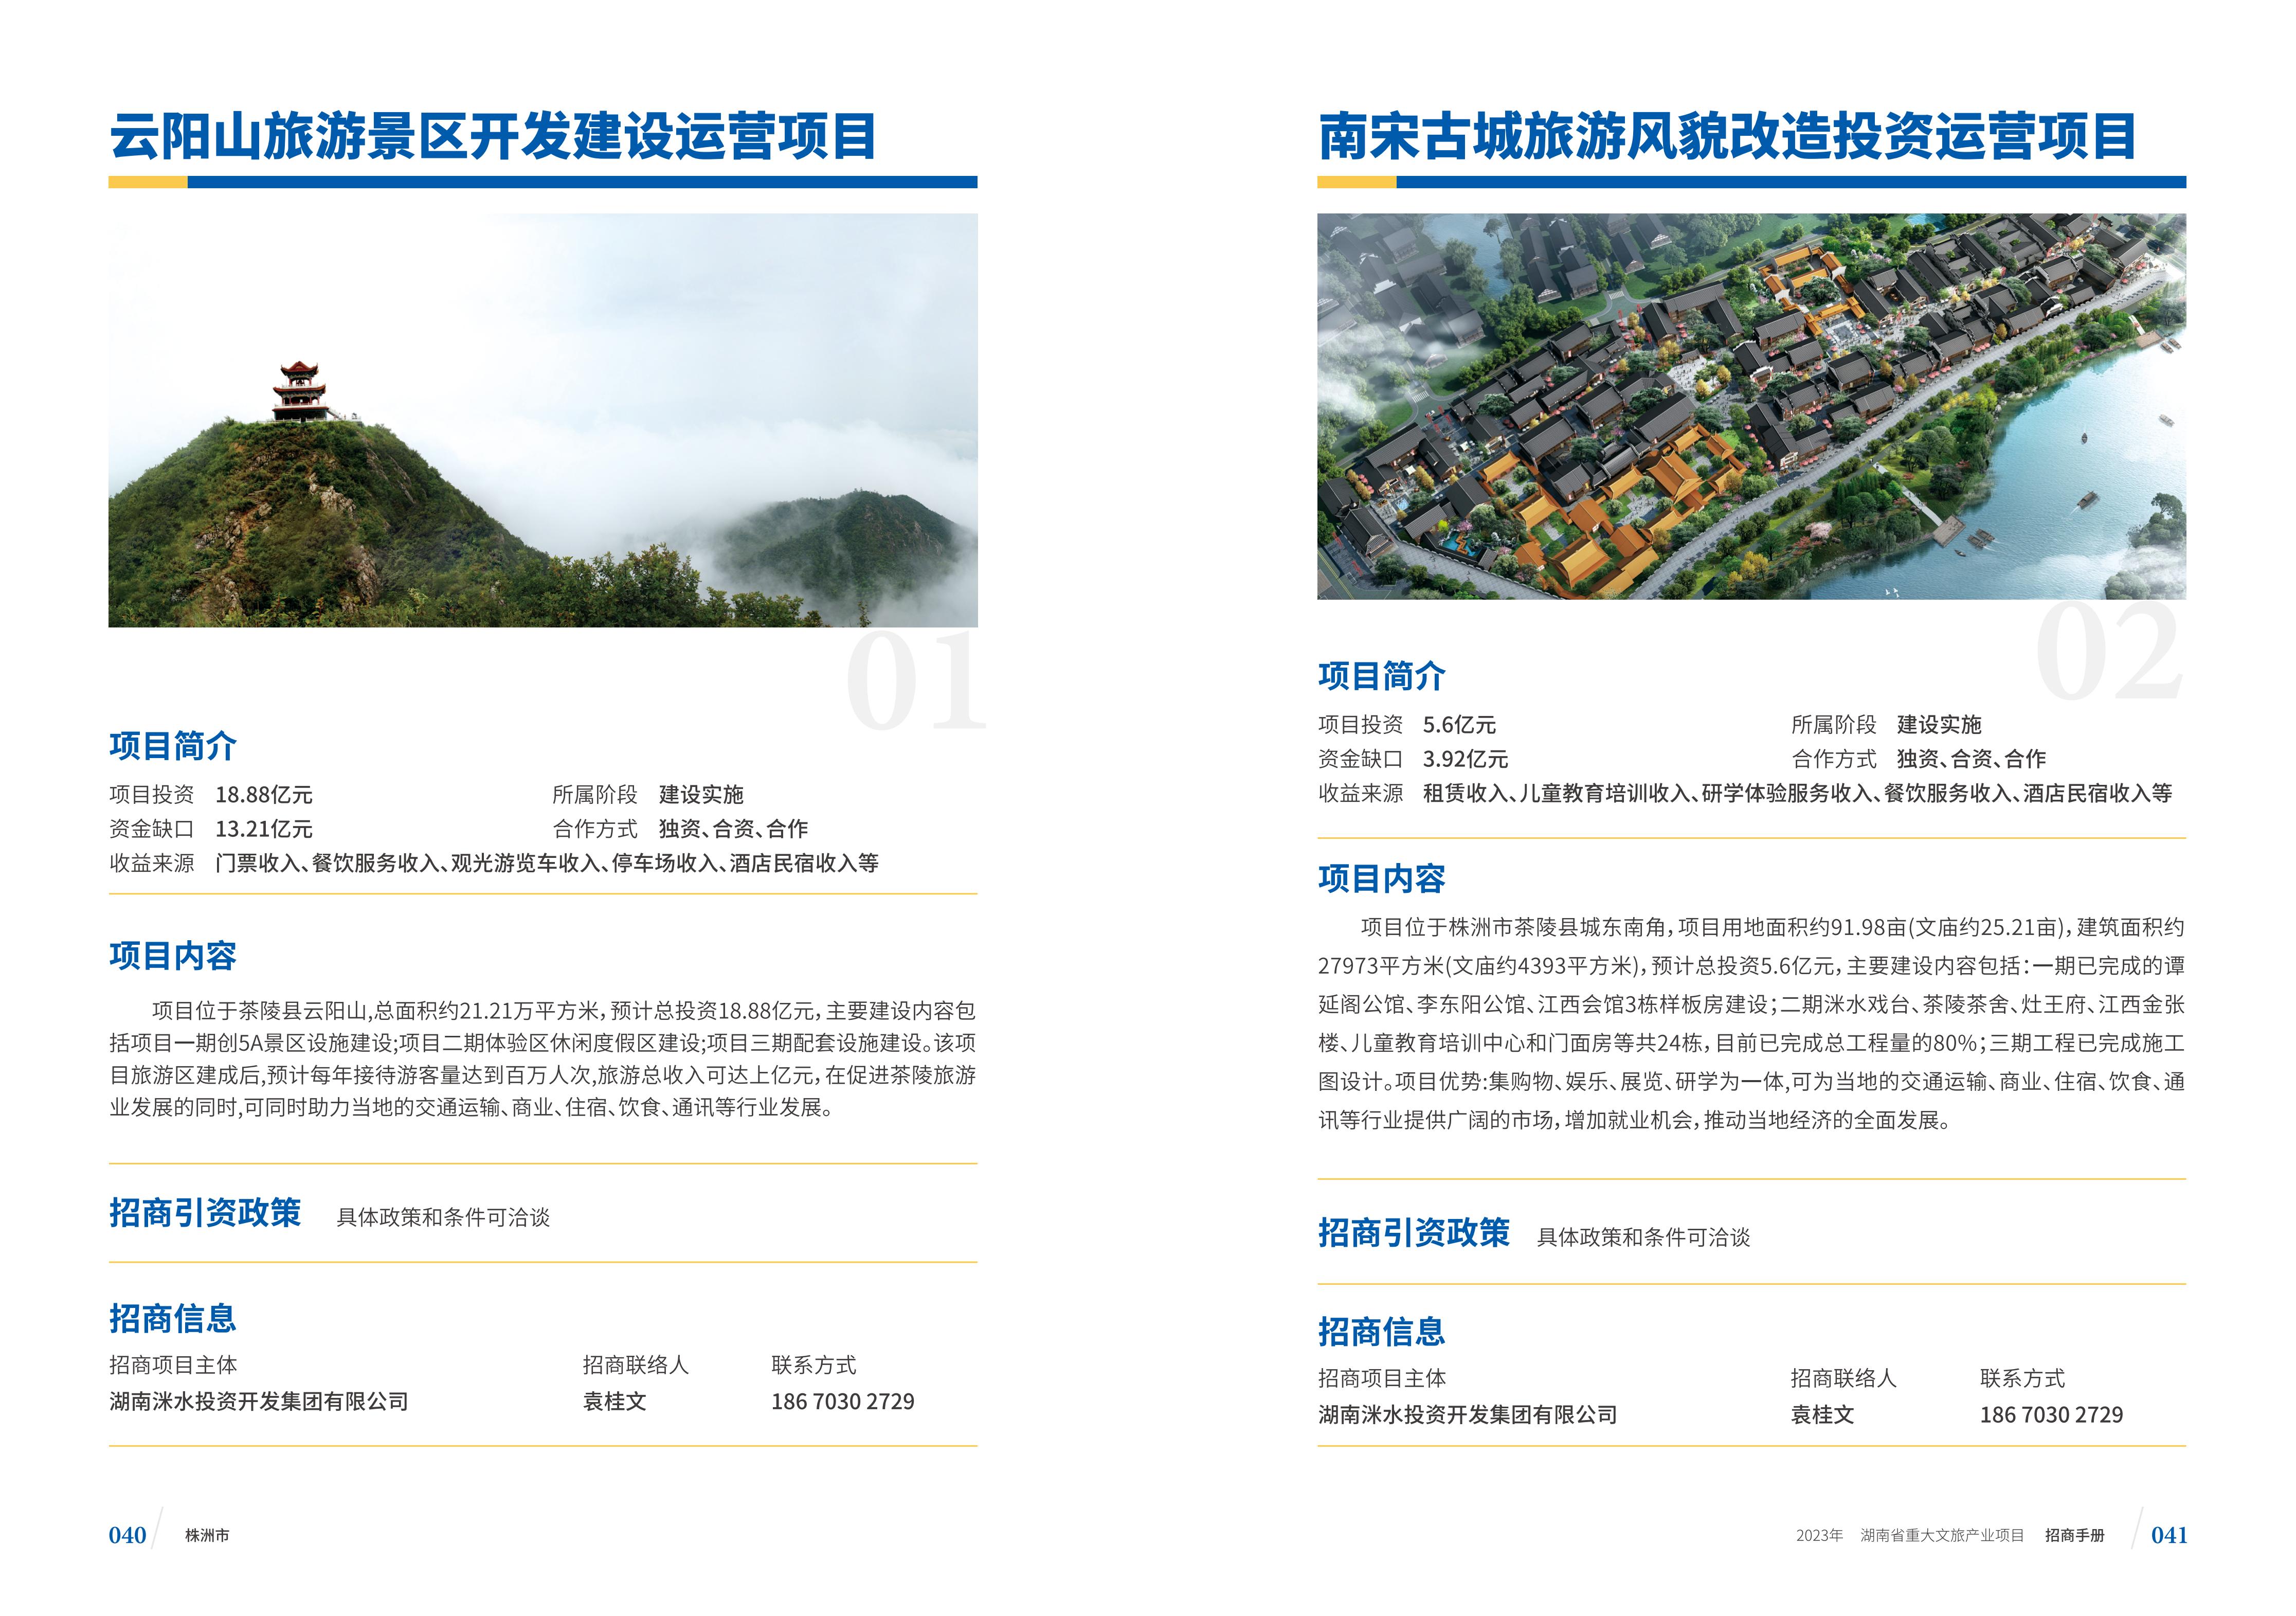 湖南省重大文旅产业项目招手册线上链接版_28.jpg